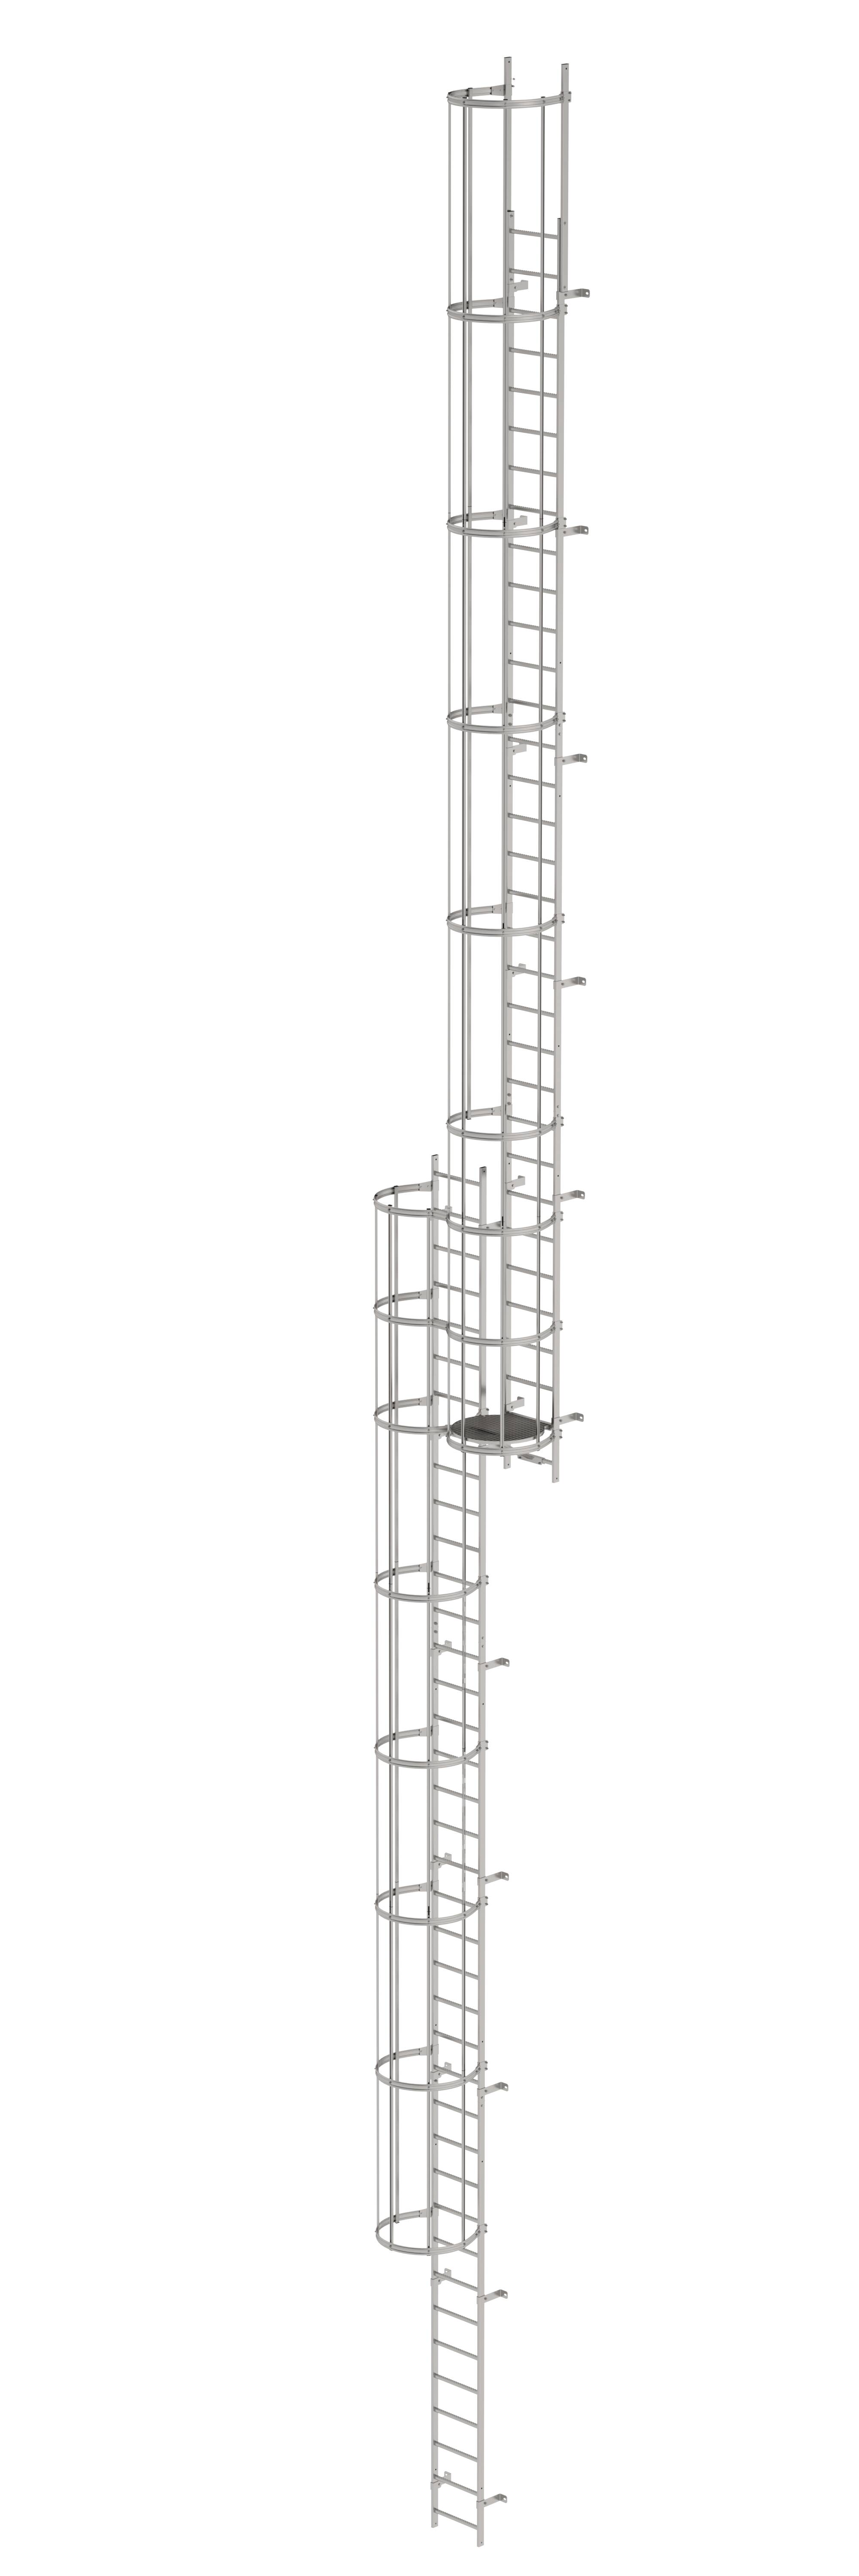 Mehrzügige Steigleiter mit Rückenschutz (Bau) Edelstahl 19,12m